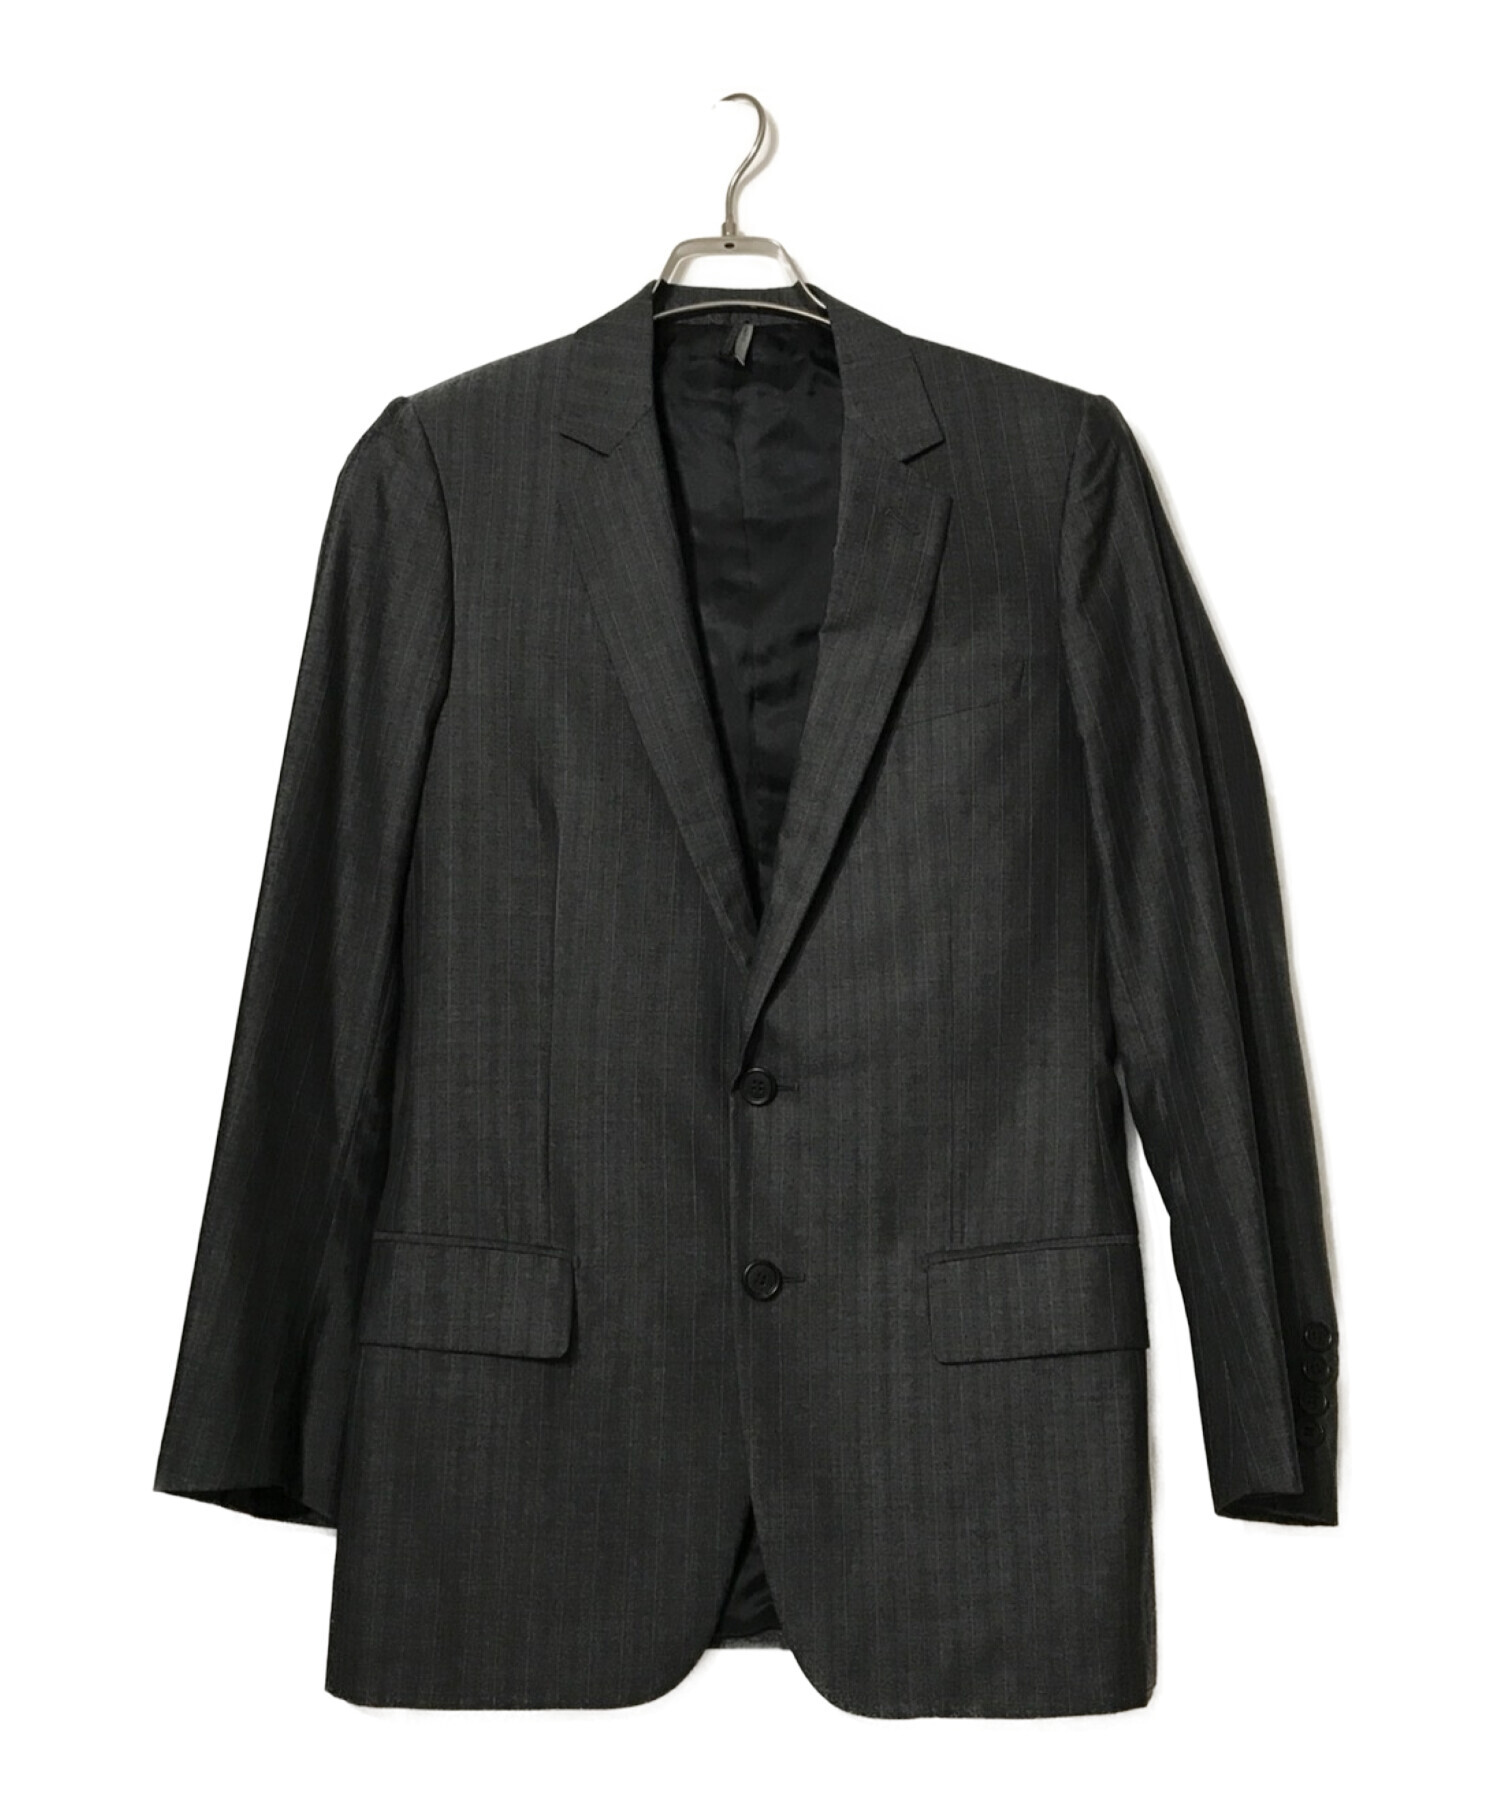 16800円格安 購入 オーダー 格安 Dior スーツ セットアップ シルク混